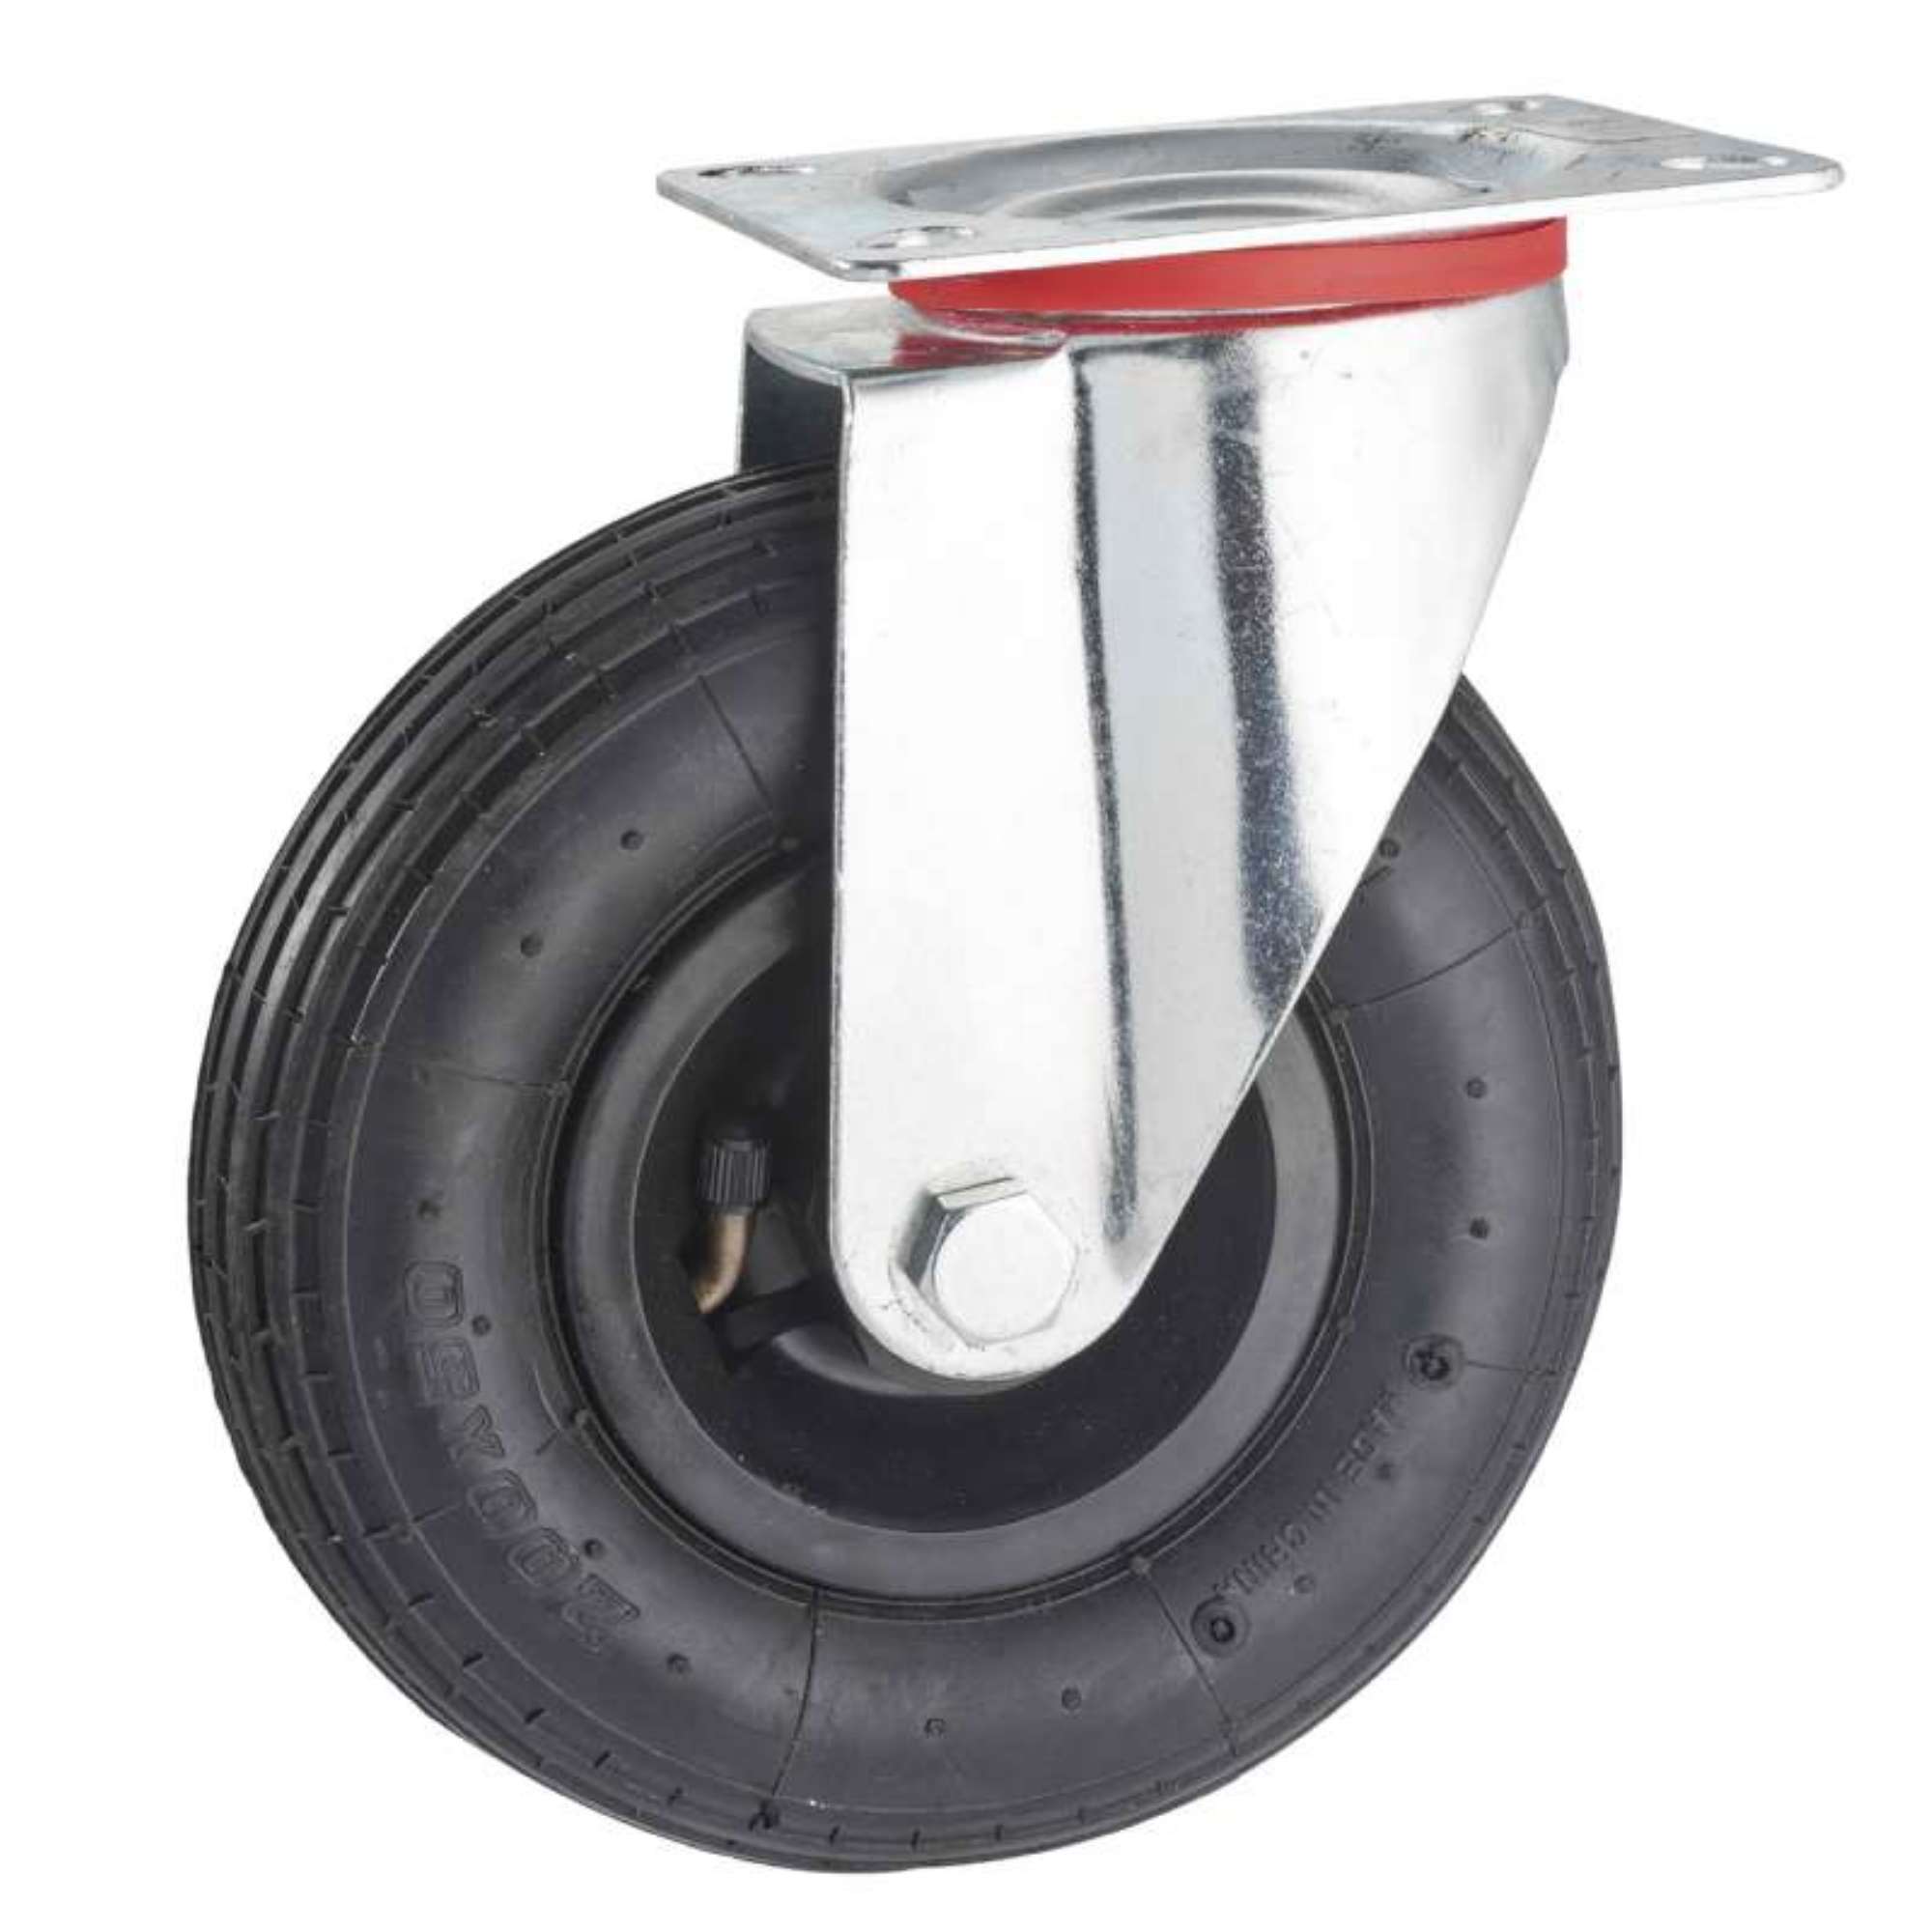 Lot roulettes pivotantes pneu gonflable 3.00-4 - 405 Kg